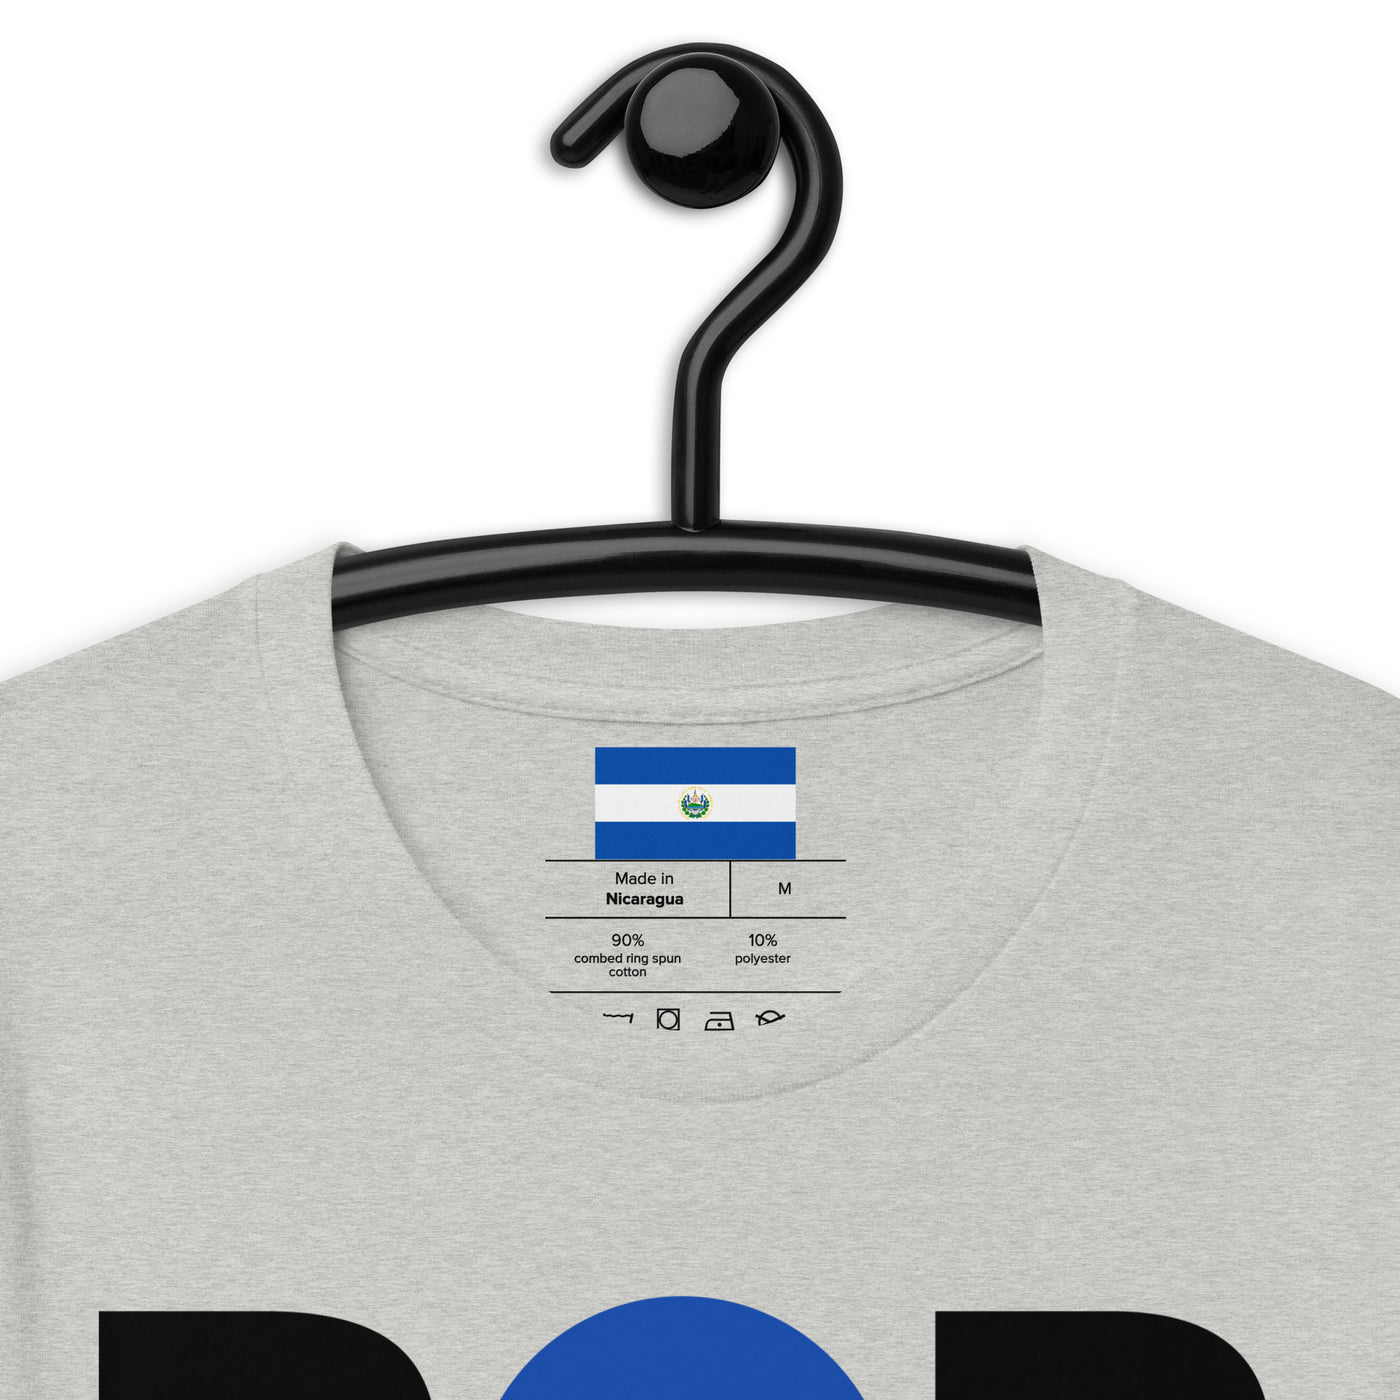 El Salvador POR VIDA (Black Text) Unisex t-shirt